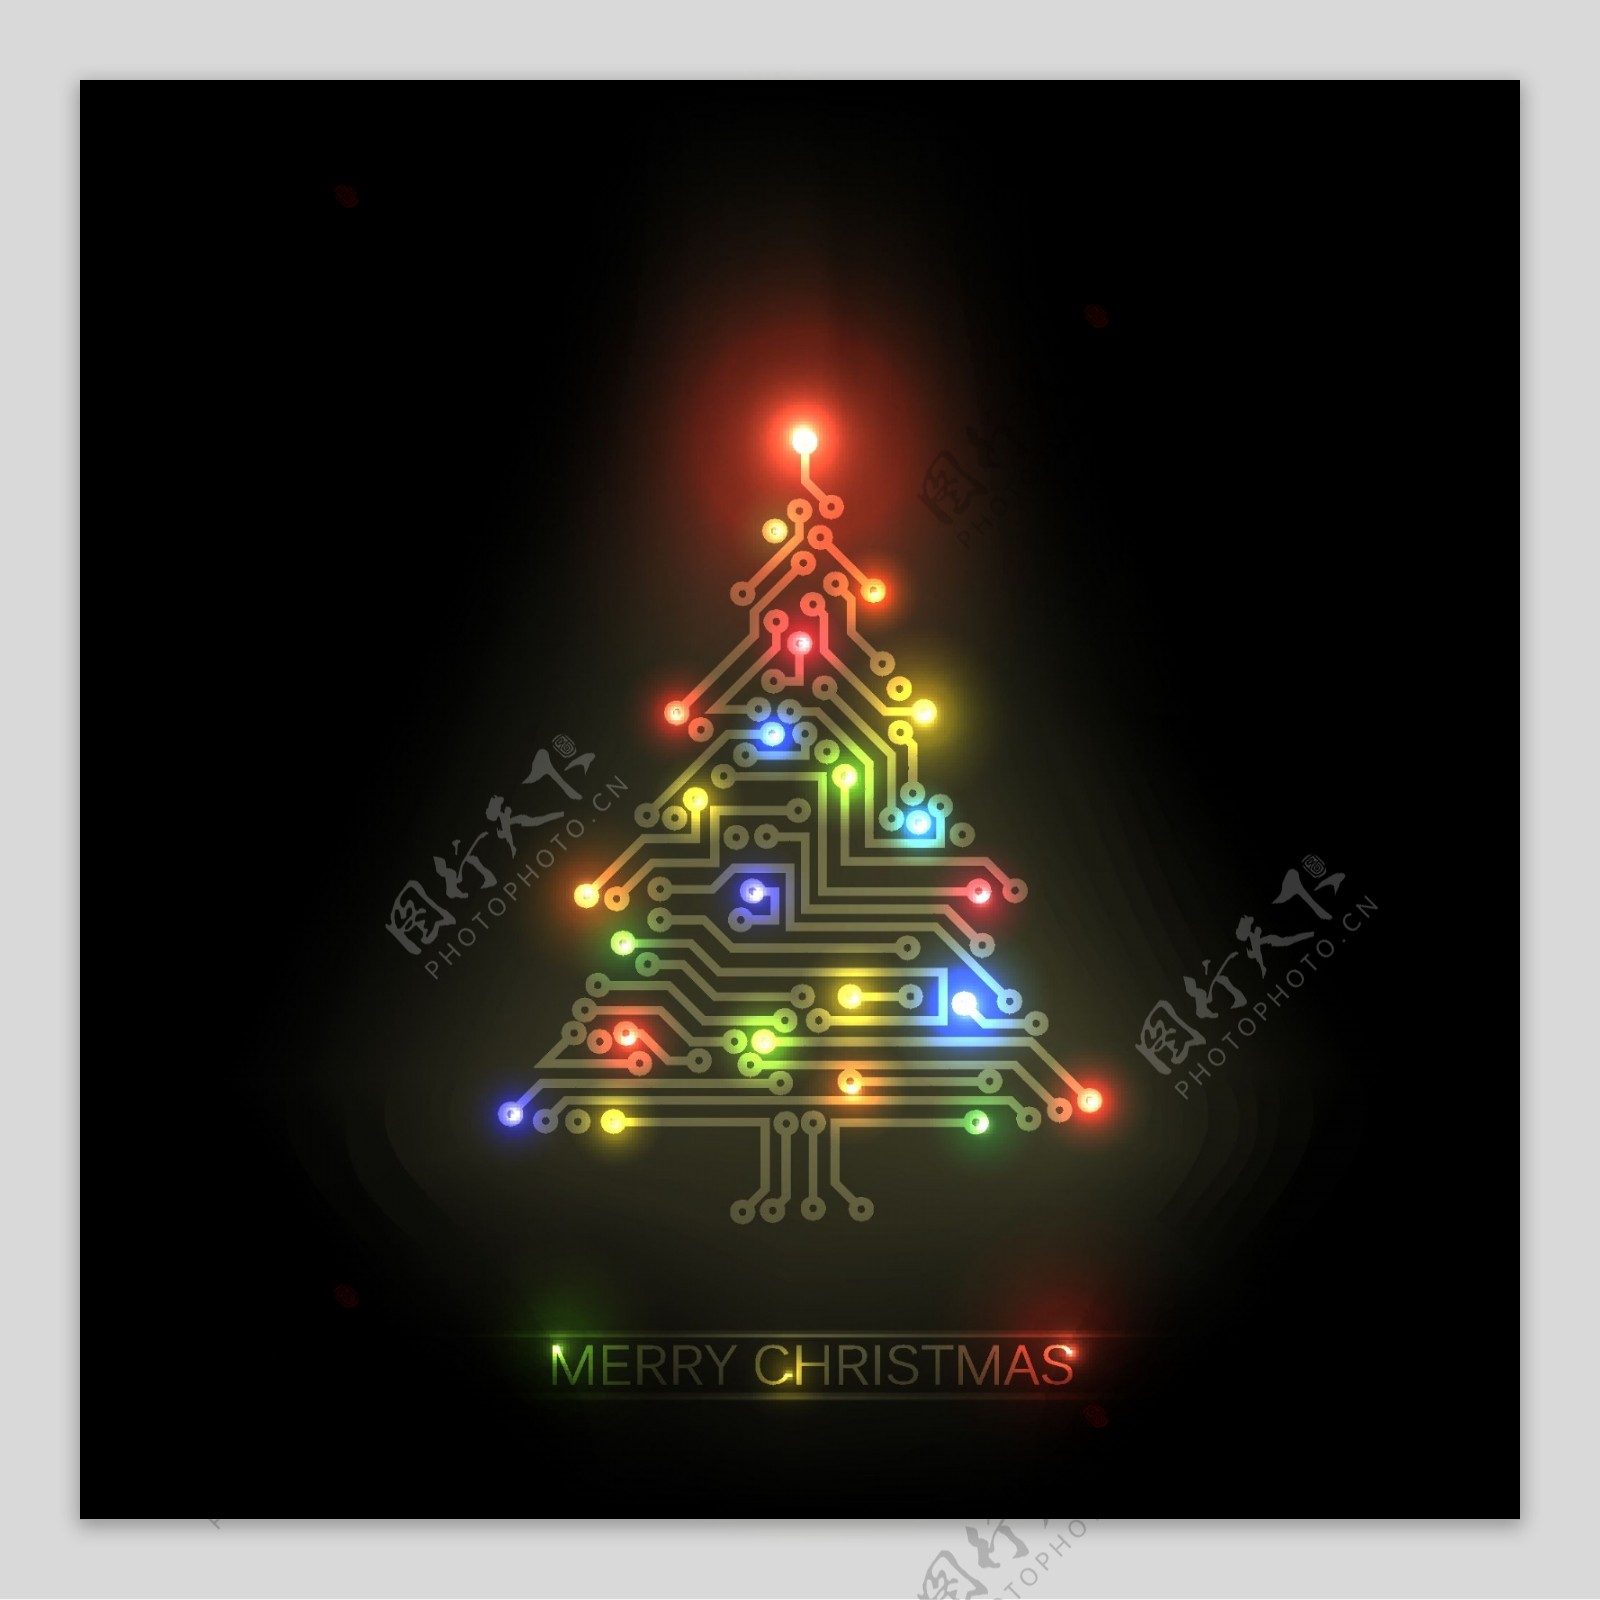 矢量彩色电路圣诞树造型